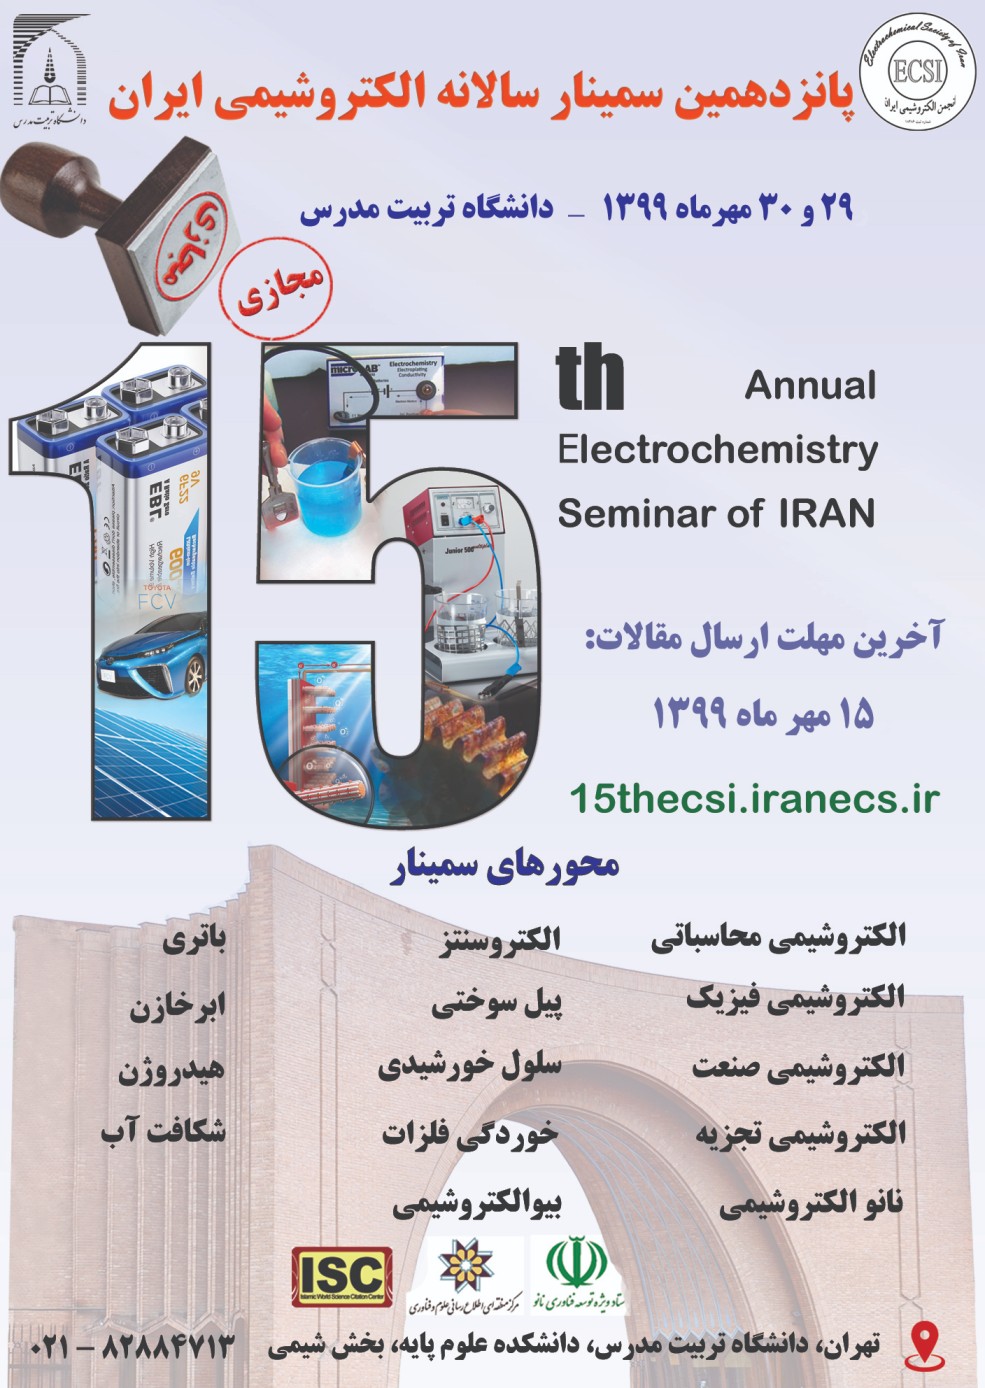 برگزاری پانزدهمین سمینار الکتروشیمی ایران بصورت مجازی و در تاریخهای 29 و 30 مهرماه سال جاری